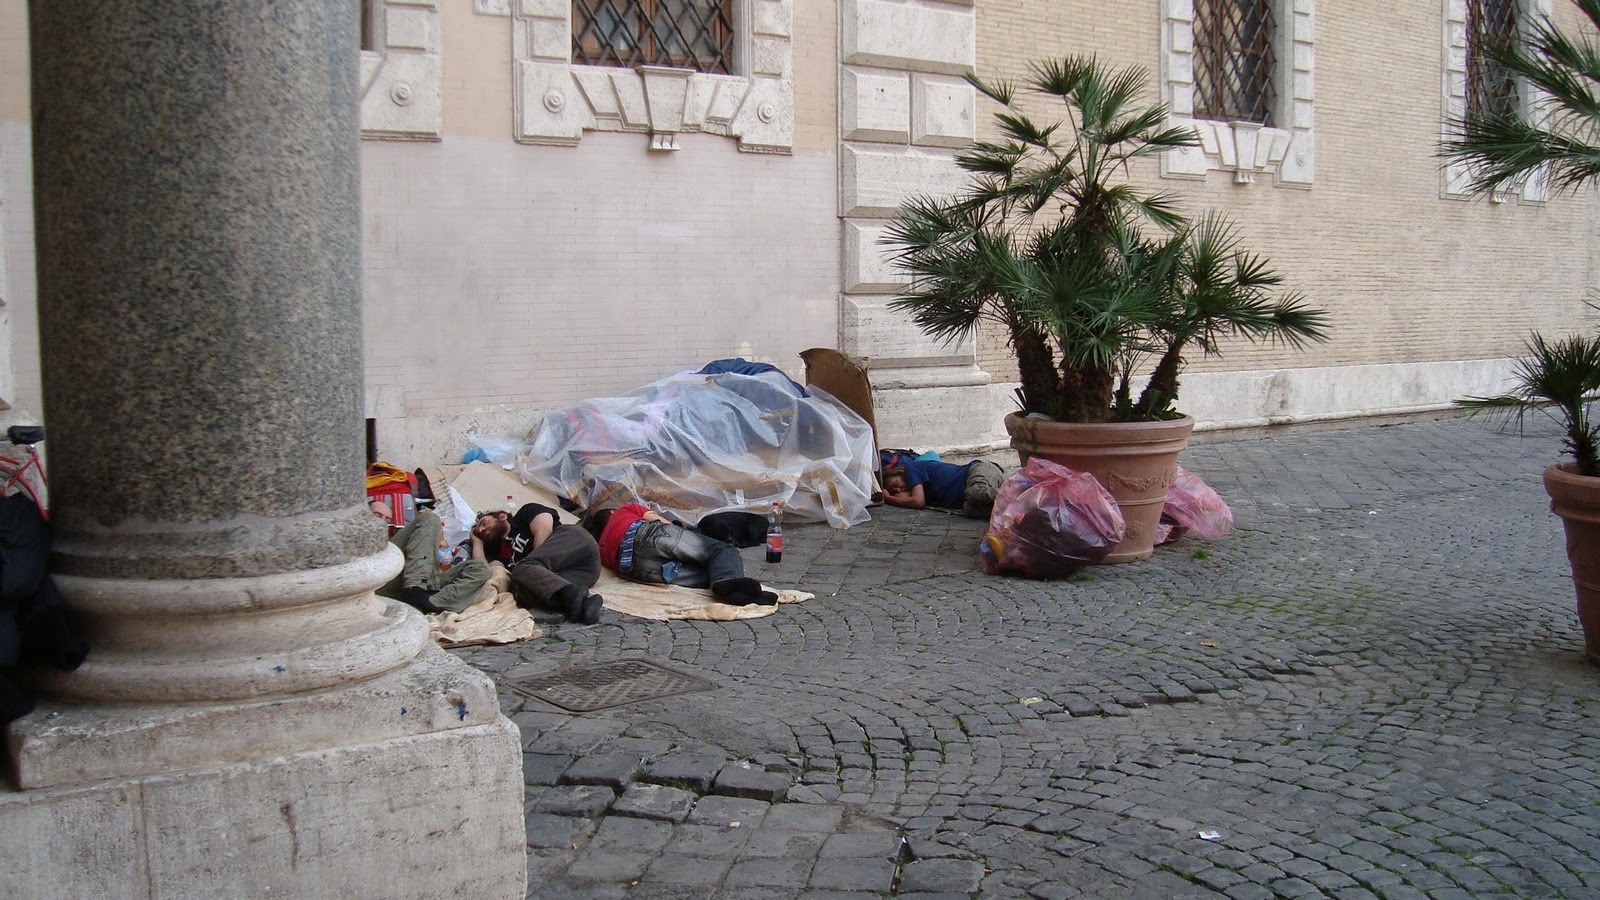 homeless in Rome in 2000,